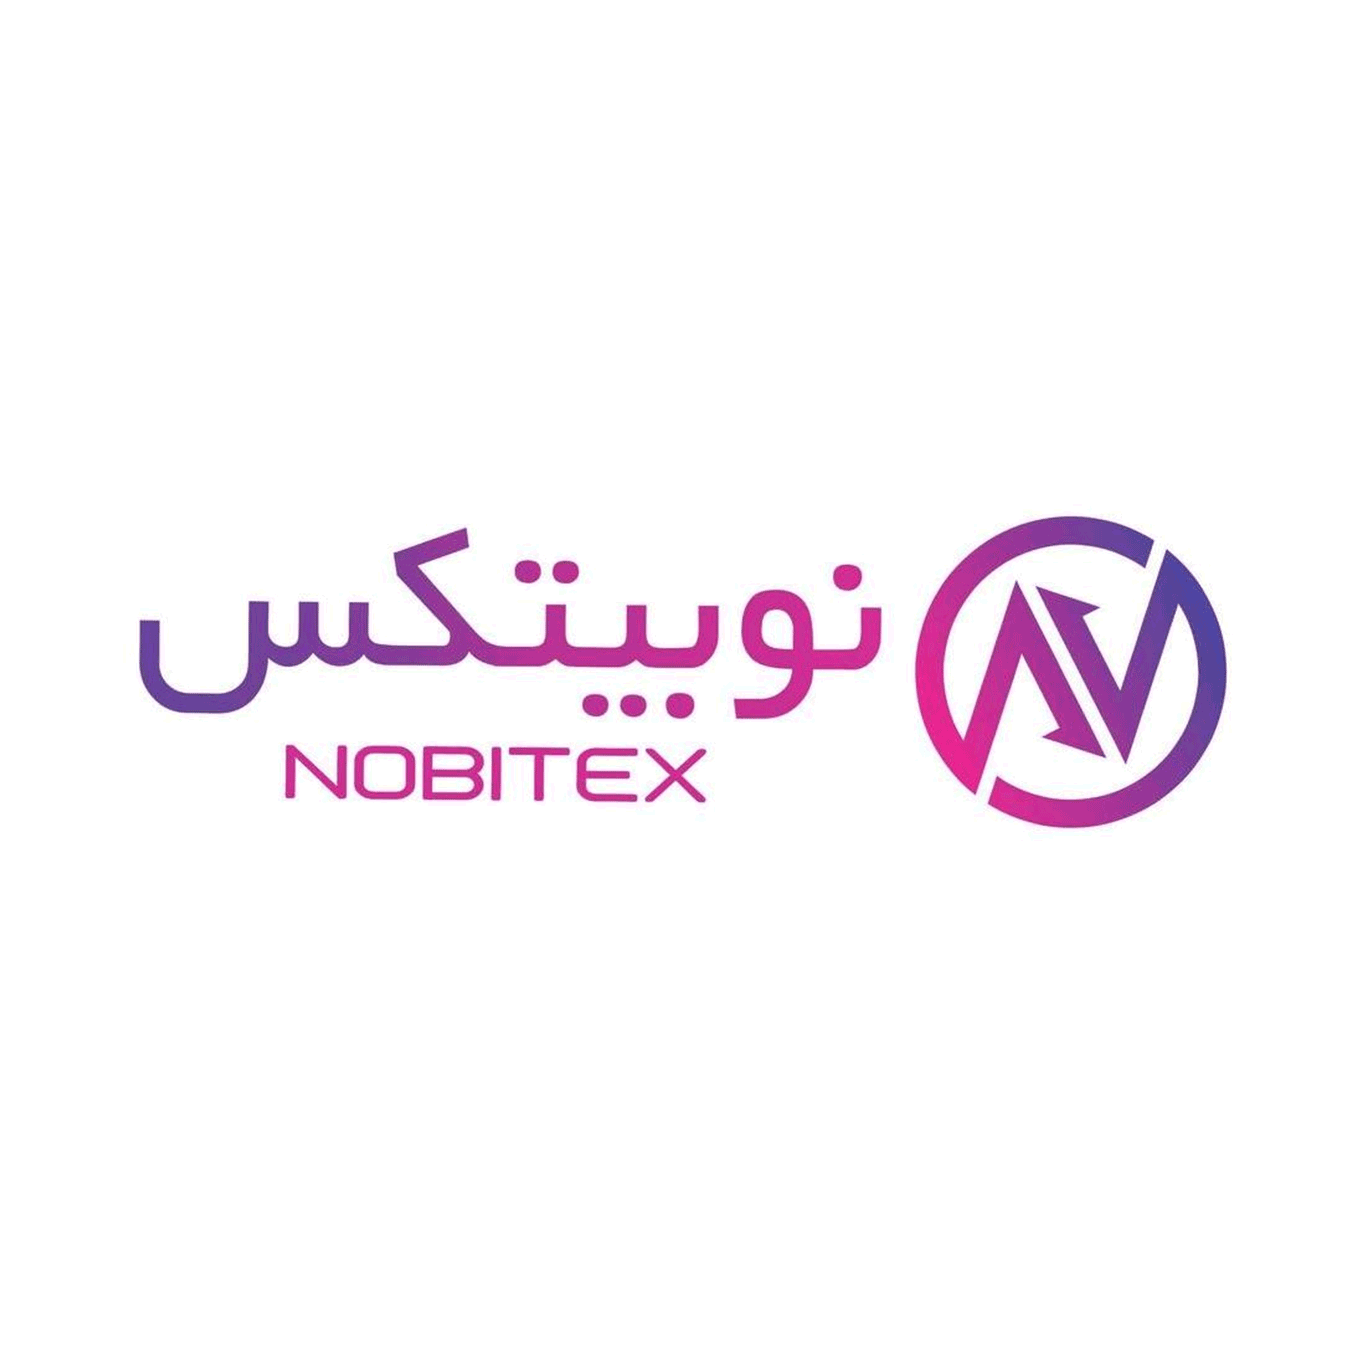 آموزش خرید و فروش در صرافی نوبیتکس (Nobitex)